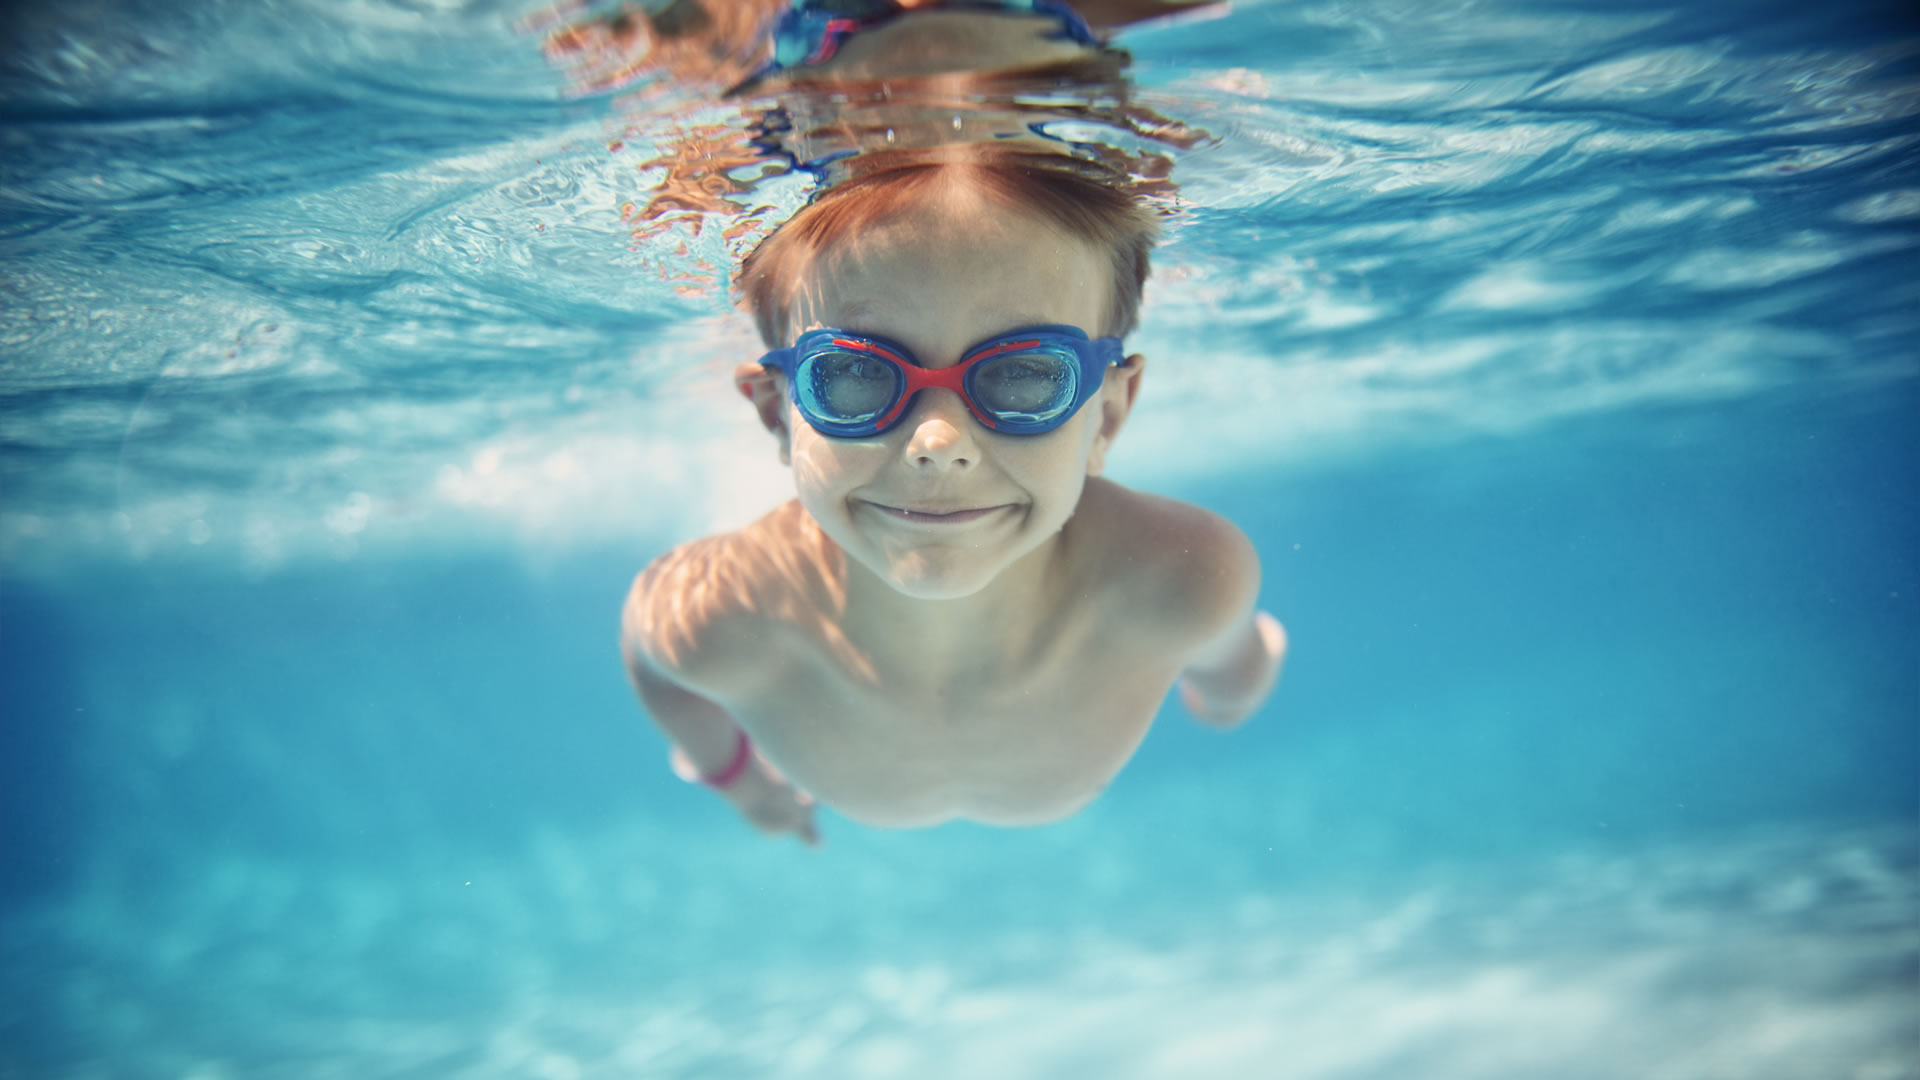 Pool Hygiene und Sicherheitstipps für Kinder im Pool